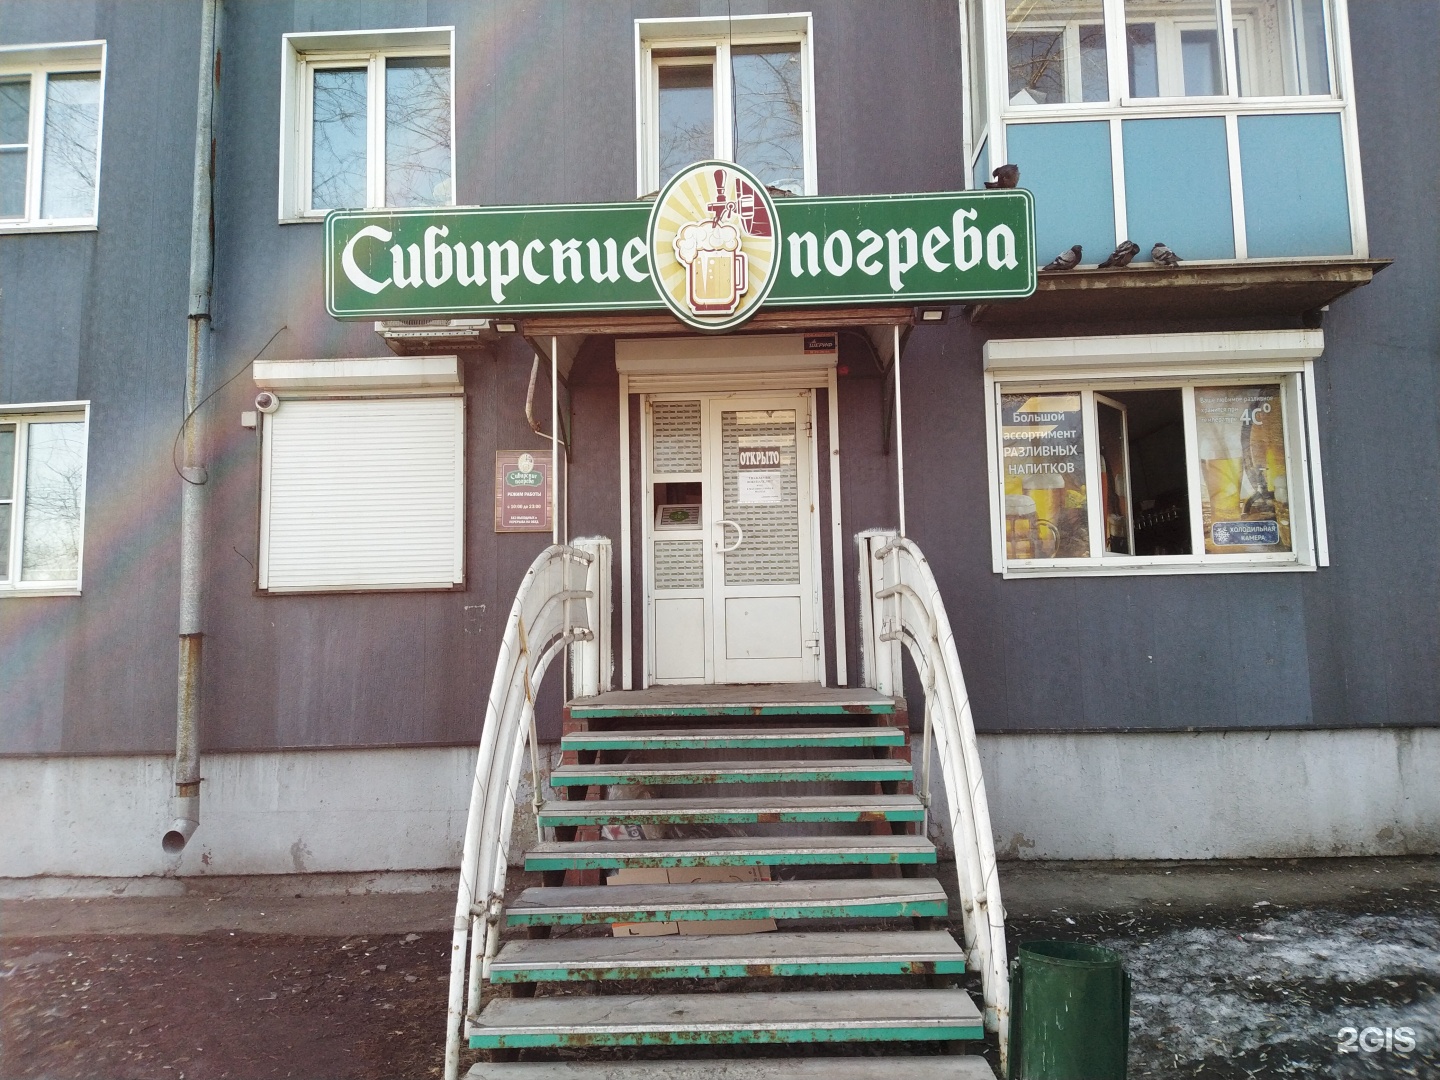 Сибирские погреба Иркутск пиво